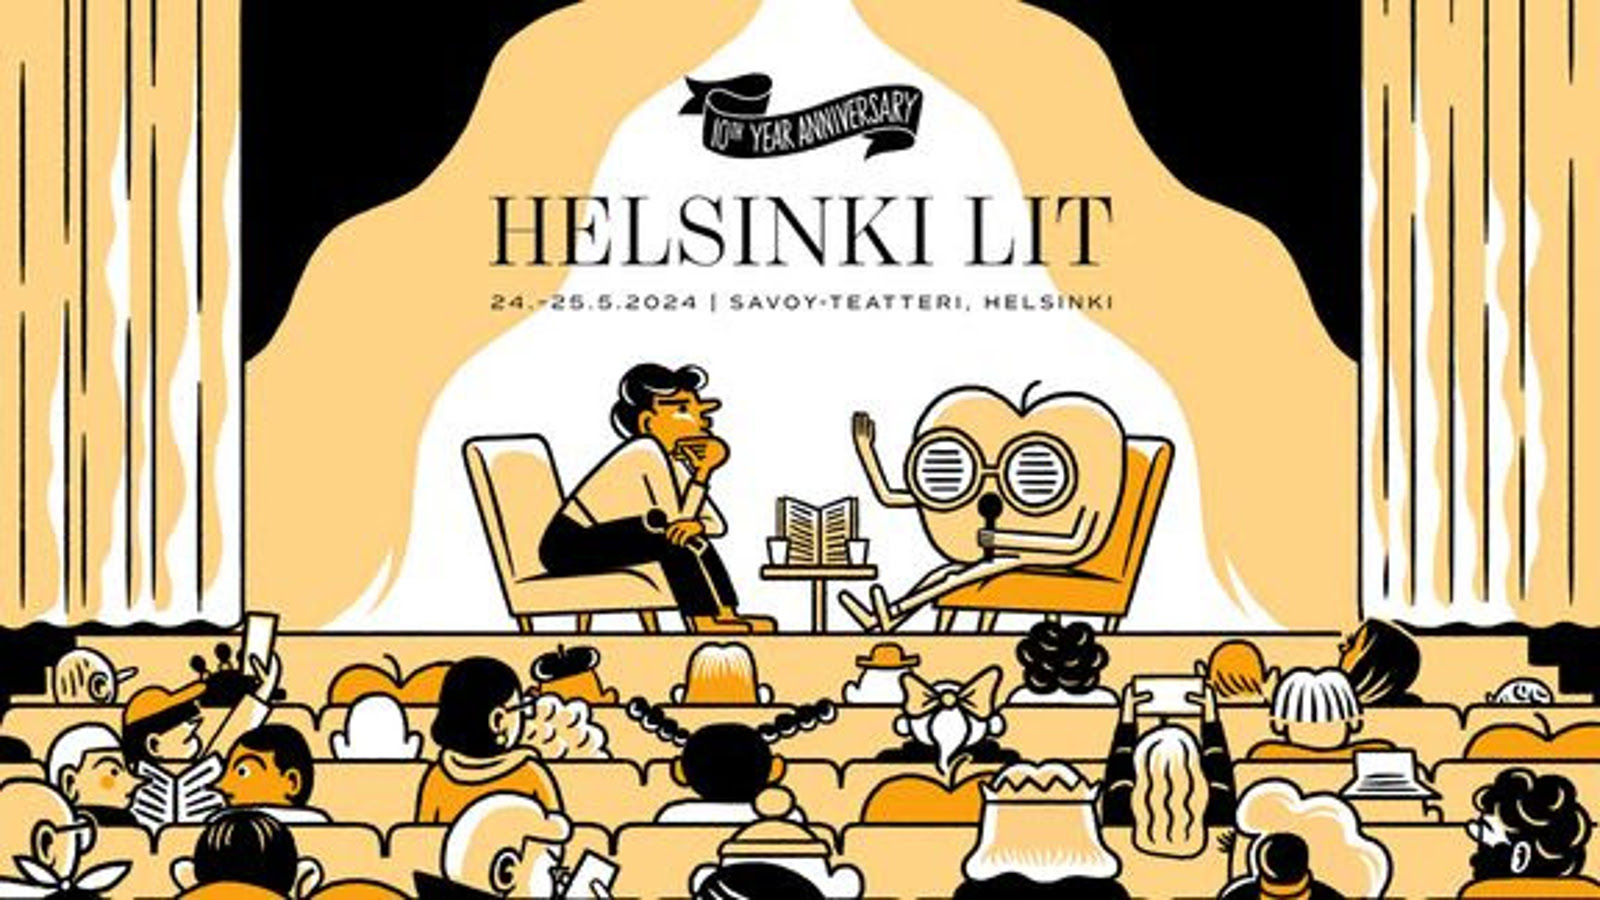 Kuvassa on kelta-mustana graafinen kuva, jossa on takaa päin alhaalla yleisöä.  Ylempänä on näyttämö, jossa vasemmalla istuu henkilö, jota haastattelee olento mikki kädessään.  Pääon iso pönttömäinen ja jossa on kaksi isoa silmää. Päällä lukee Helsinki Lit tietoinen.